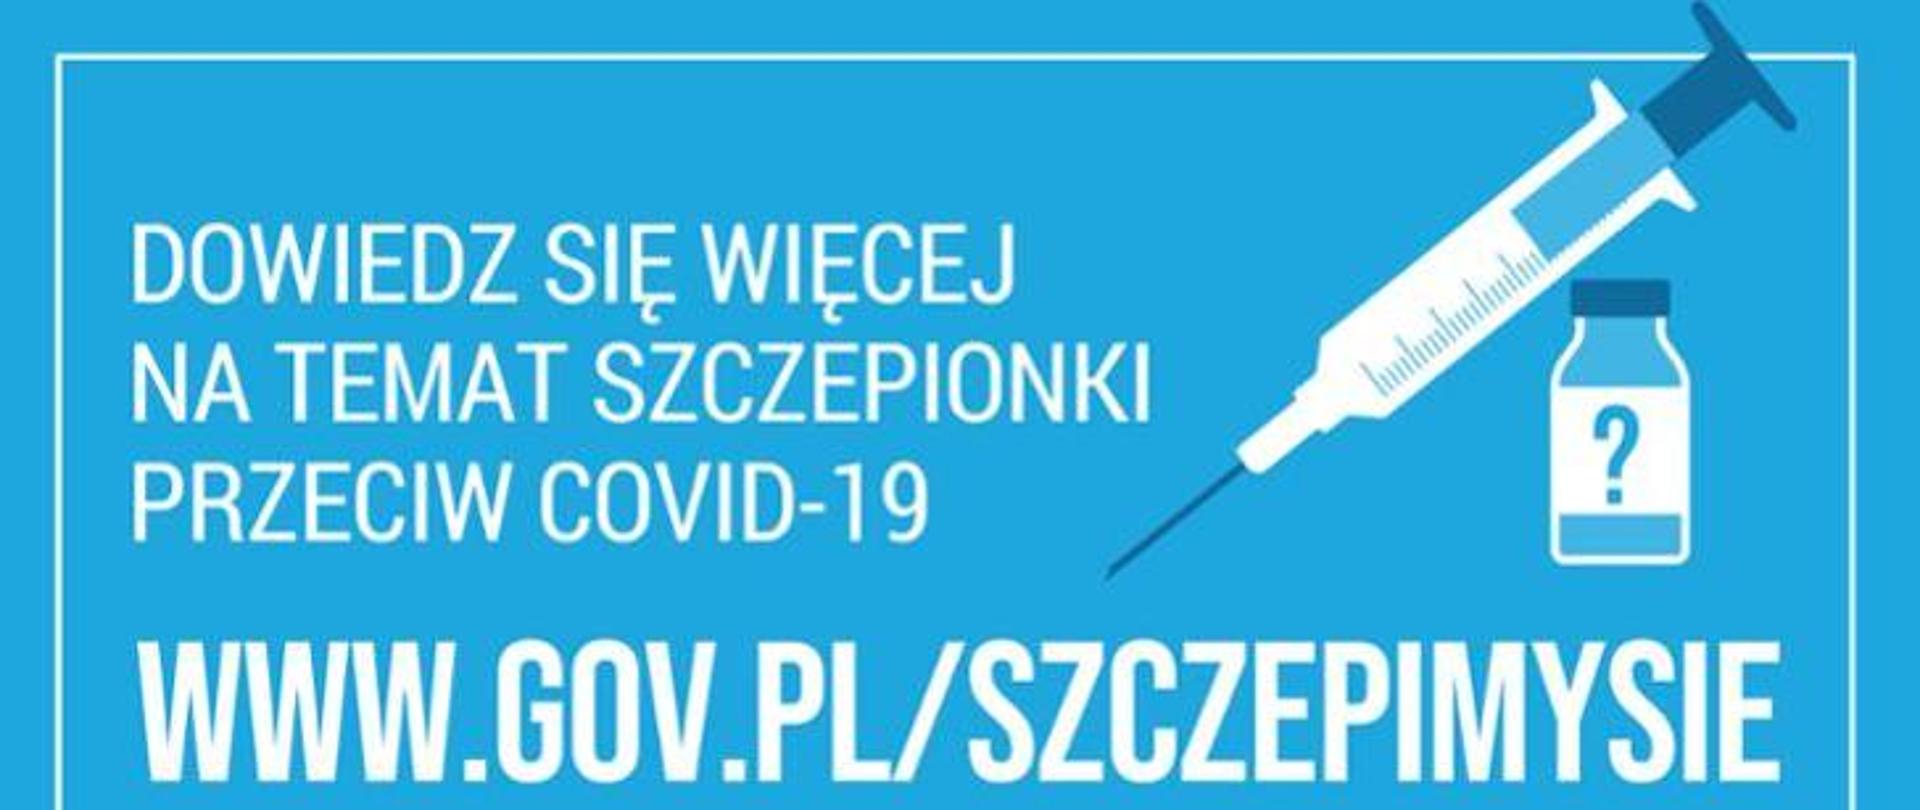 Na niebieskim tle narysowana jest biała strzykawka i ampułka z lekiem. Dodatkowo znajduje się napis : dowiedz się więcej na temat szczepionki przeciw Covid- dziewiętnaście. www.gov.pl/szczepimysie